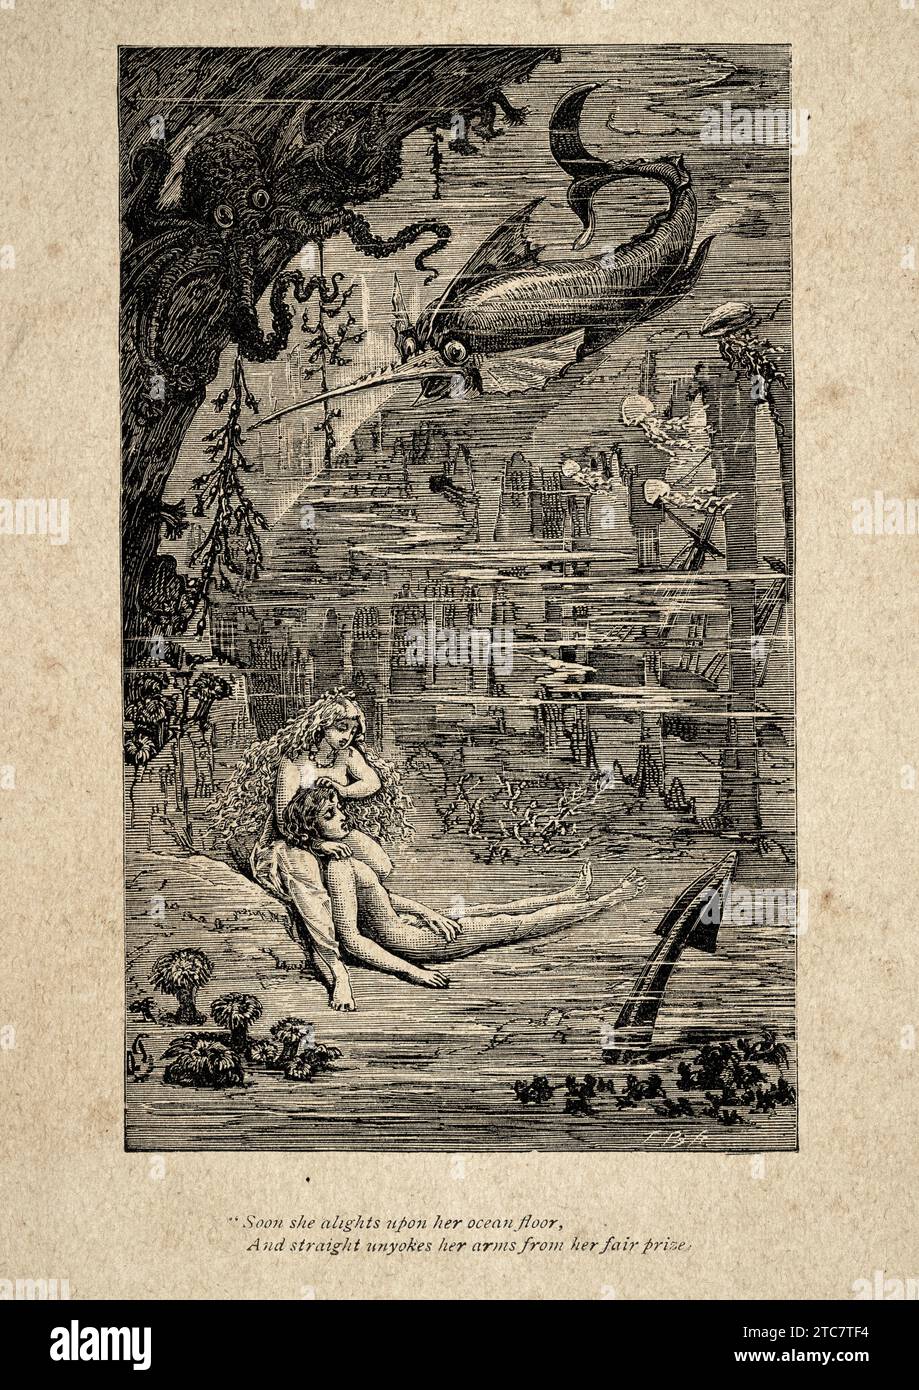 Meerjungfrau unter dem Meer, mit einem ertrunkenen Seemann, Vintage Illustration aus einem Gedicht von Thomas Hood, bald steigt sie auf ihrem Meeresboden auf und gerade uny Stockfoto